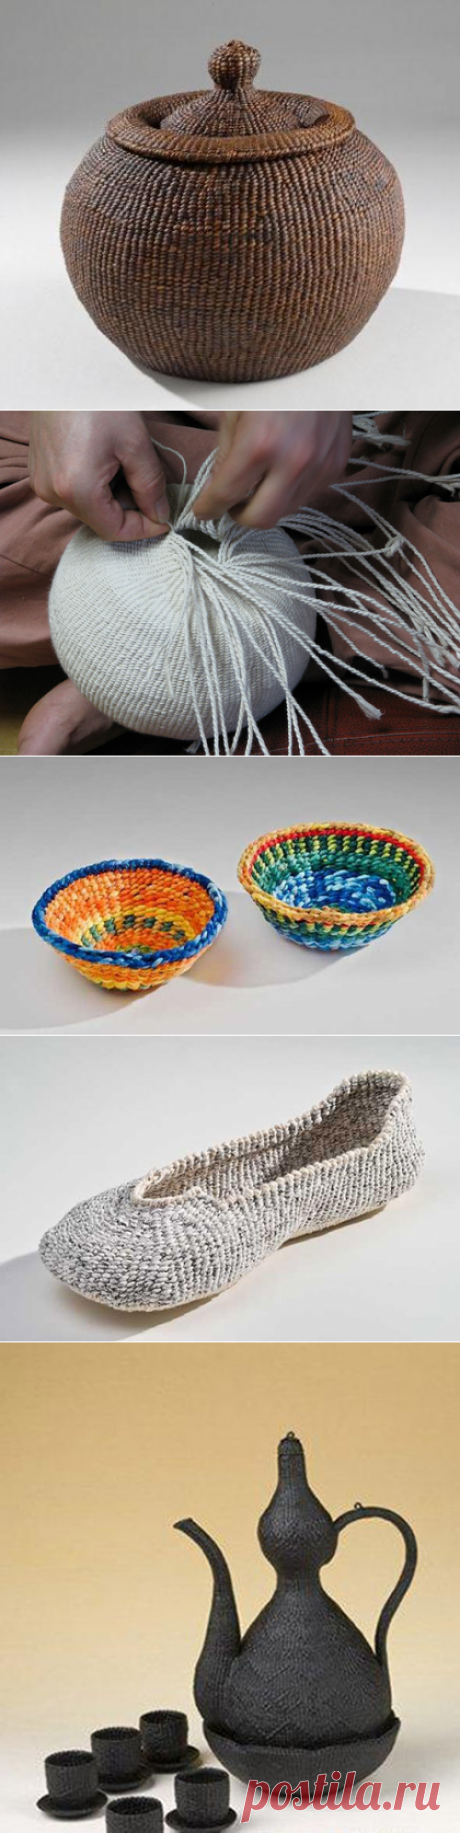 Чисын — корейская техника плетения из бумаги — Рукоделие